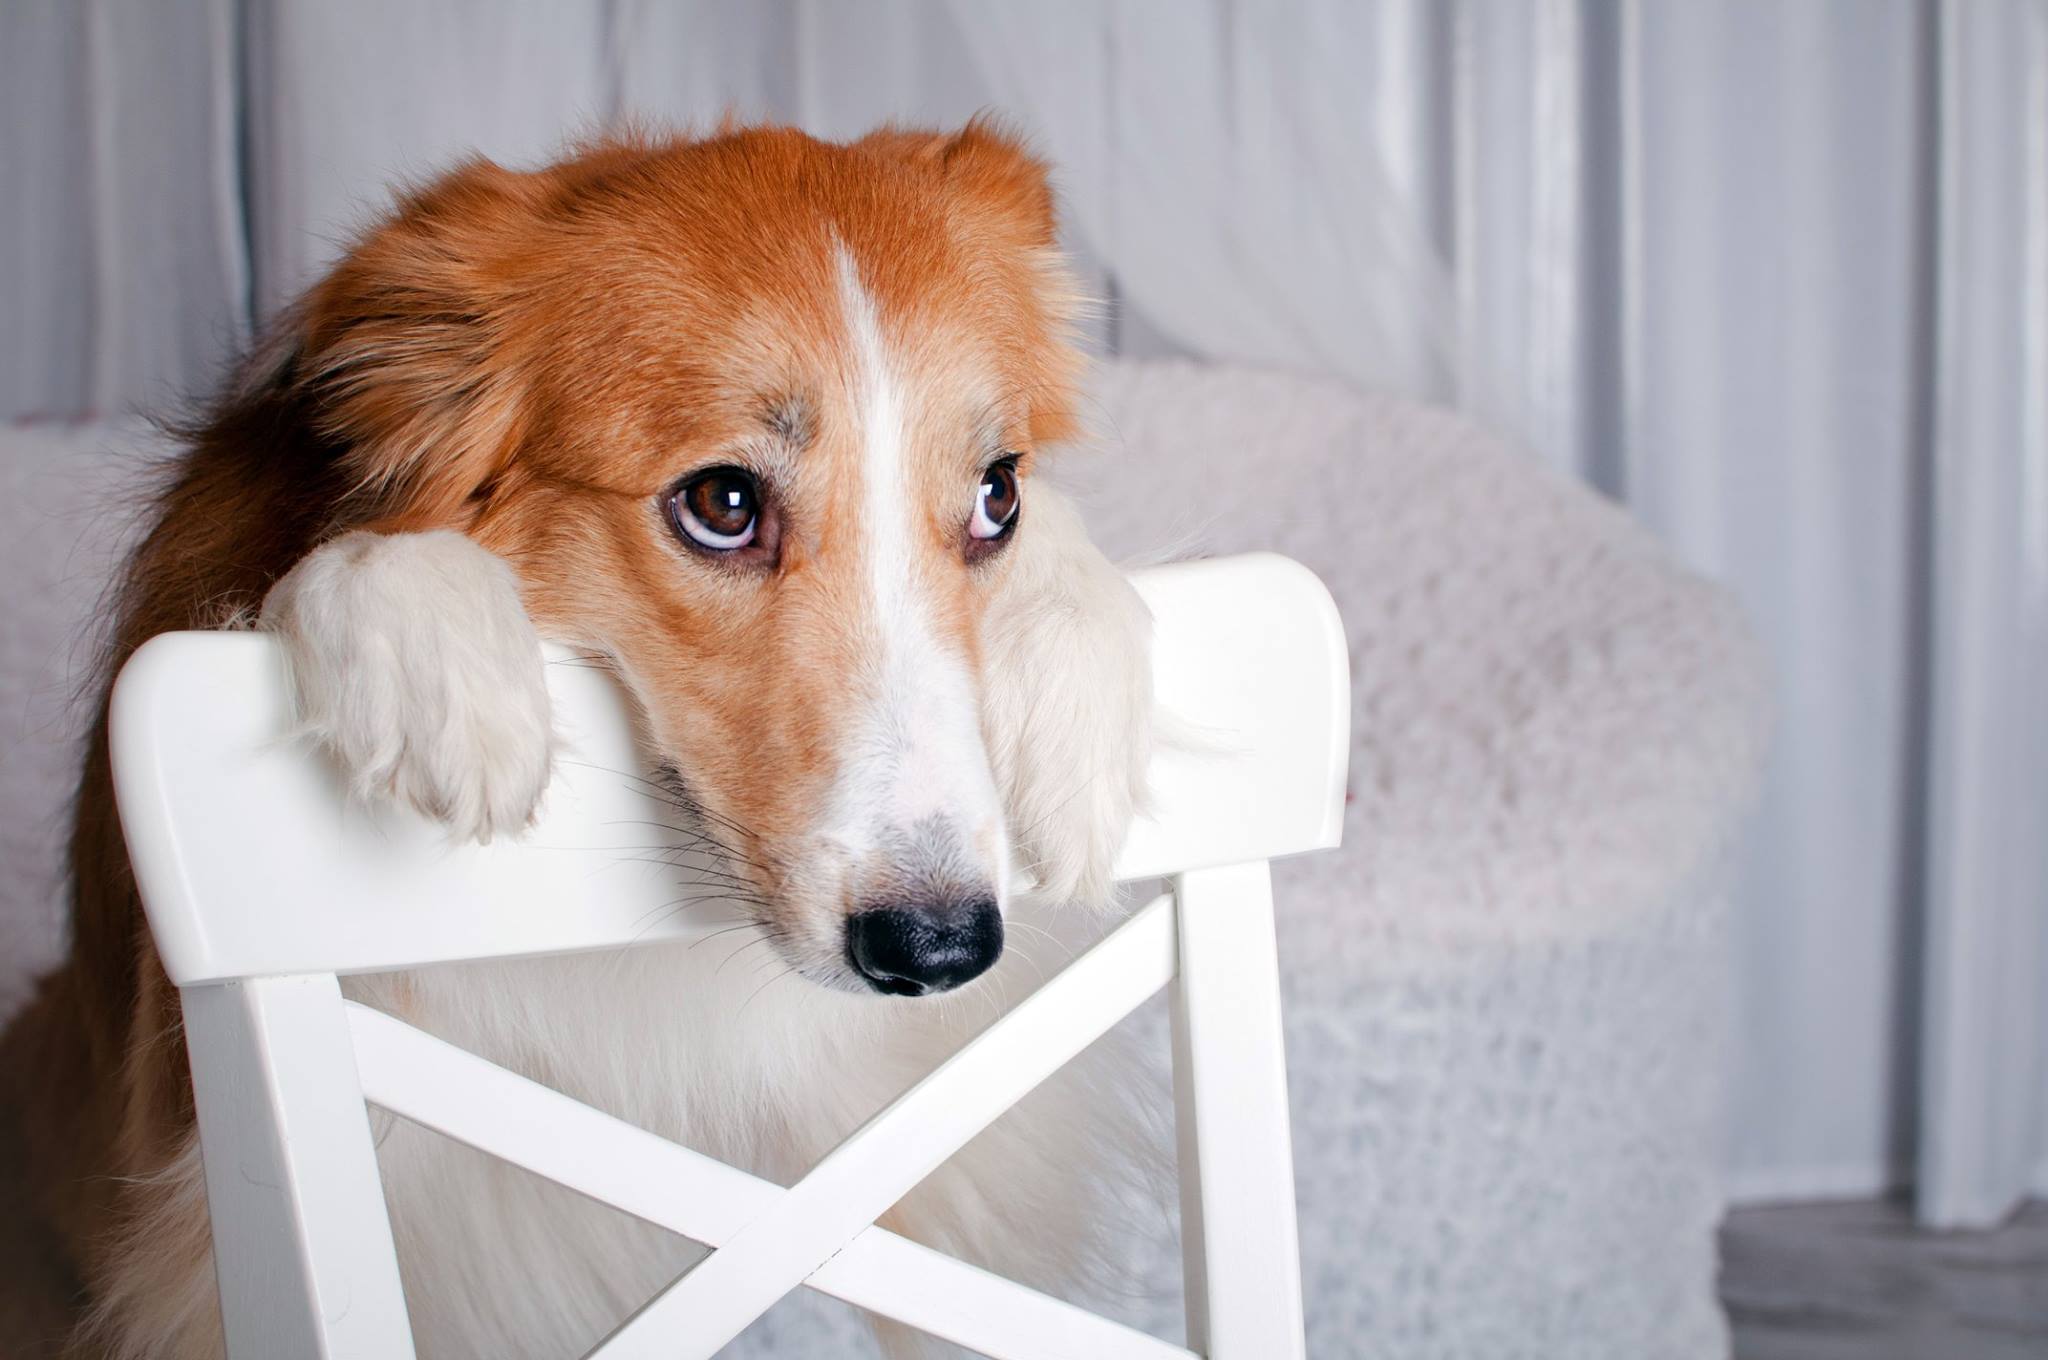 CBD Dog Treats for Anxiety